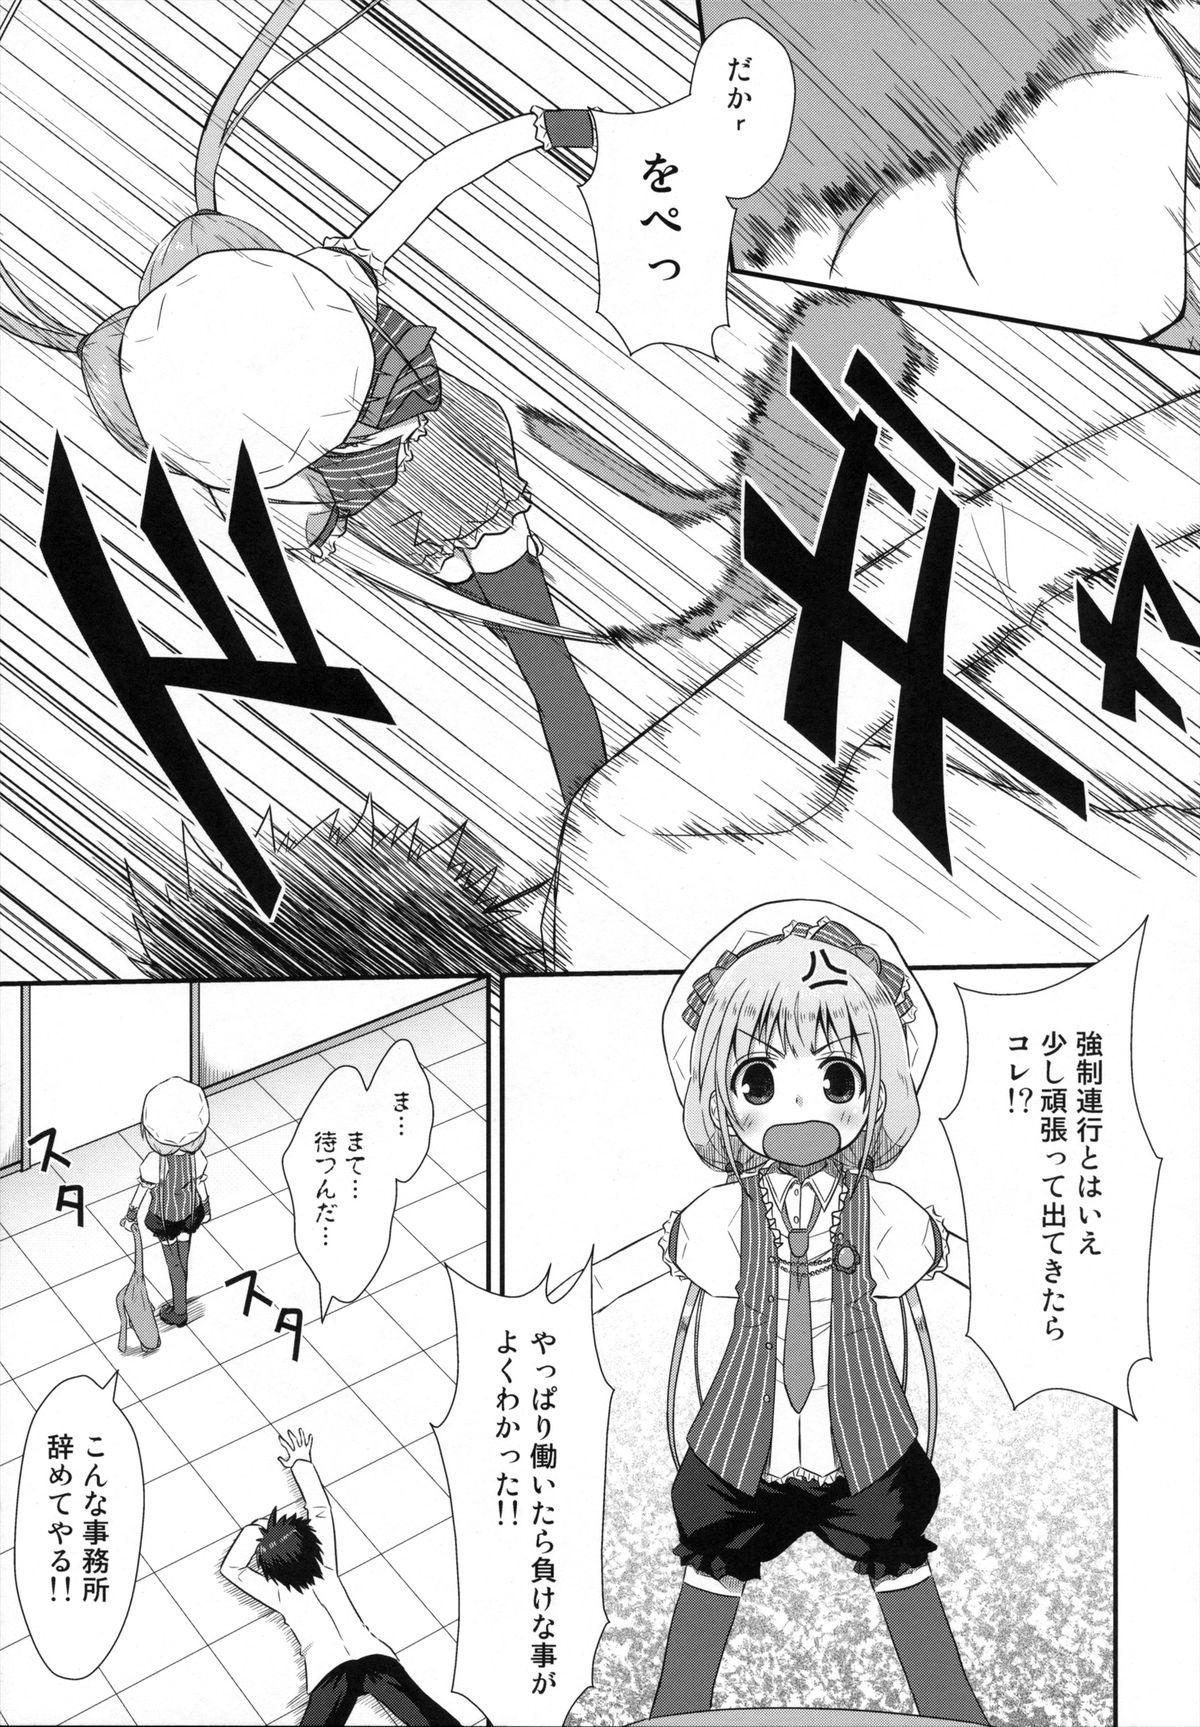 Morrita Shitte Iruka? Neet no Ashikoshi no Yowasa wo Kesshite Namete wa Ikenai - The idolmaster Hardon - Page 6